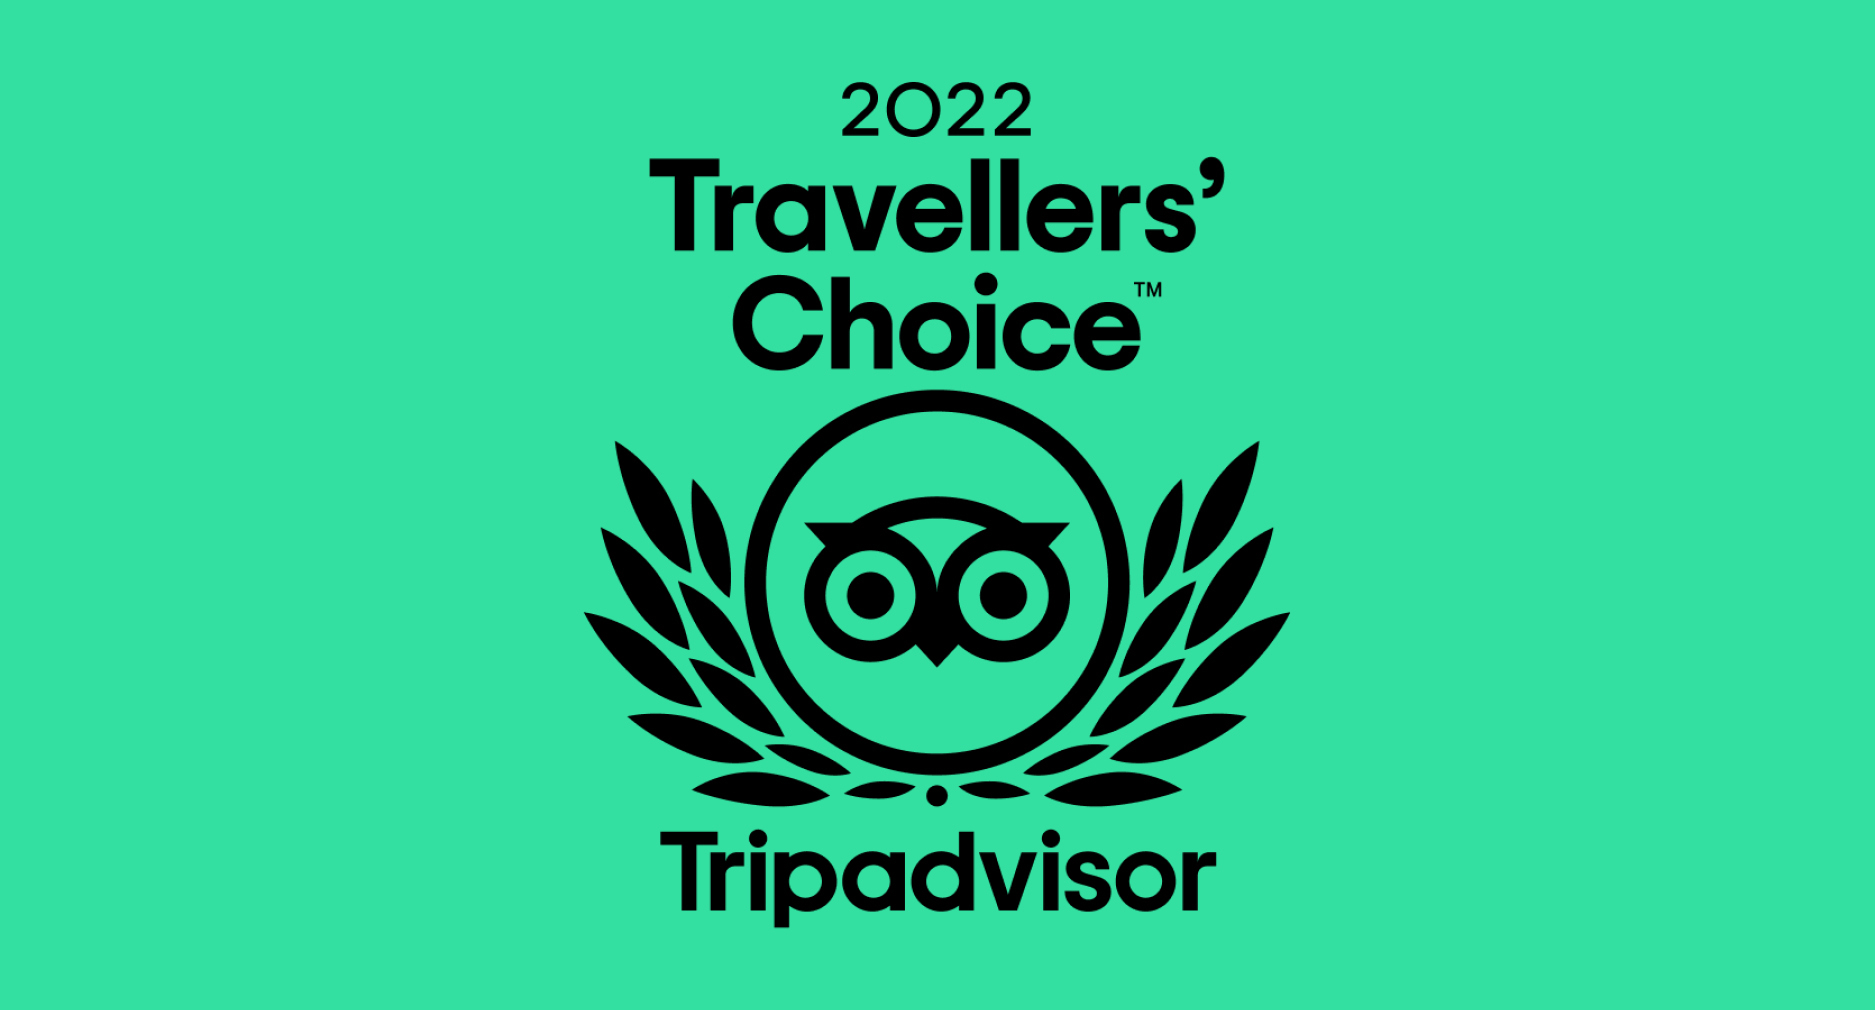 Napoleons Casino and Restaurant Hull Wins 2022 Tripadvisor Travelers’ Choice Award - Tripadvisor - Napoleons Casinos & Restaurants